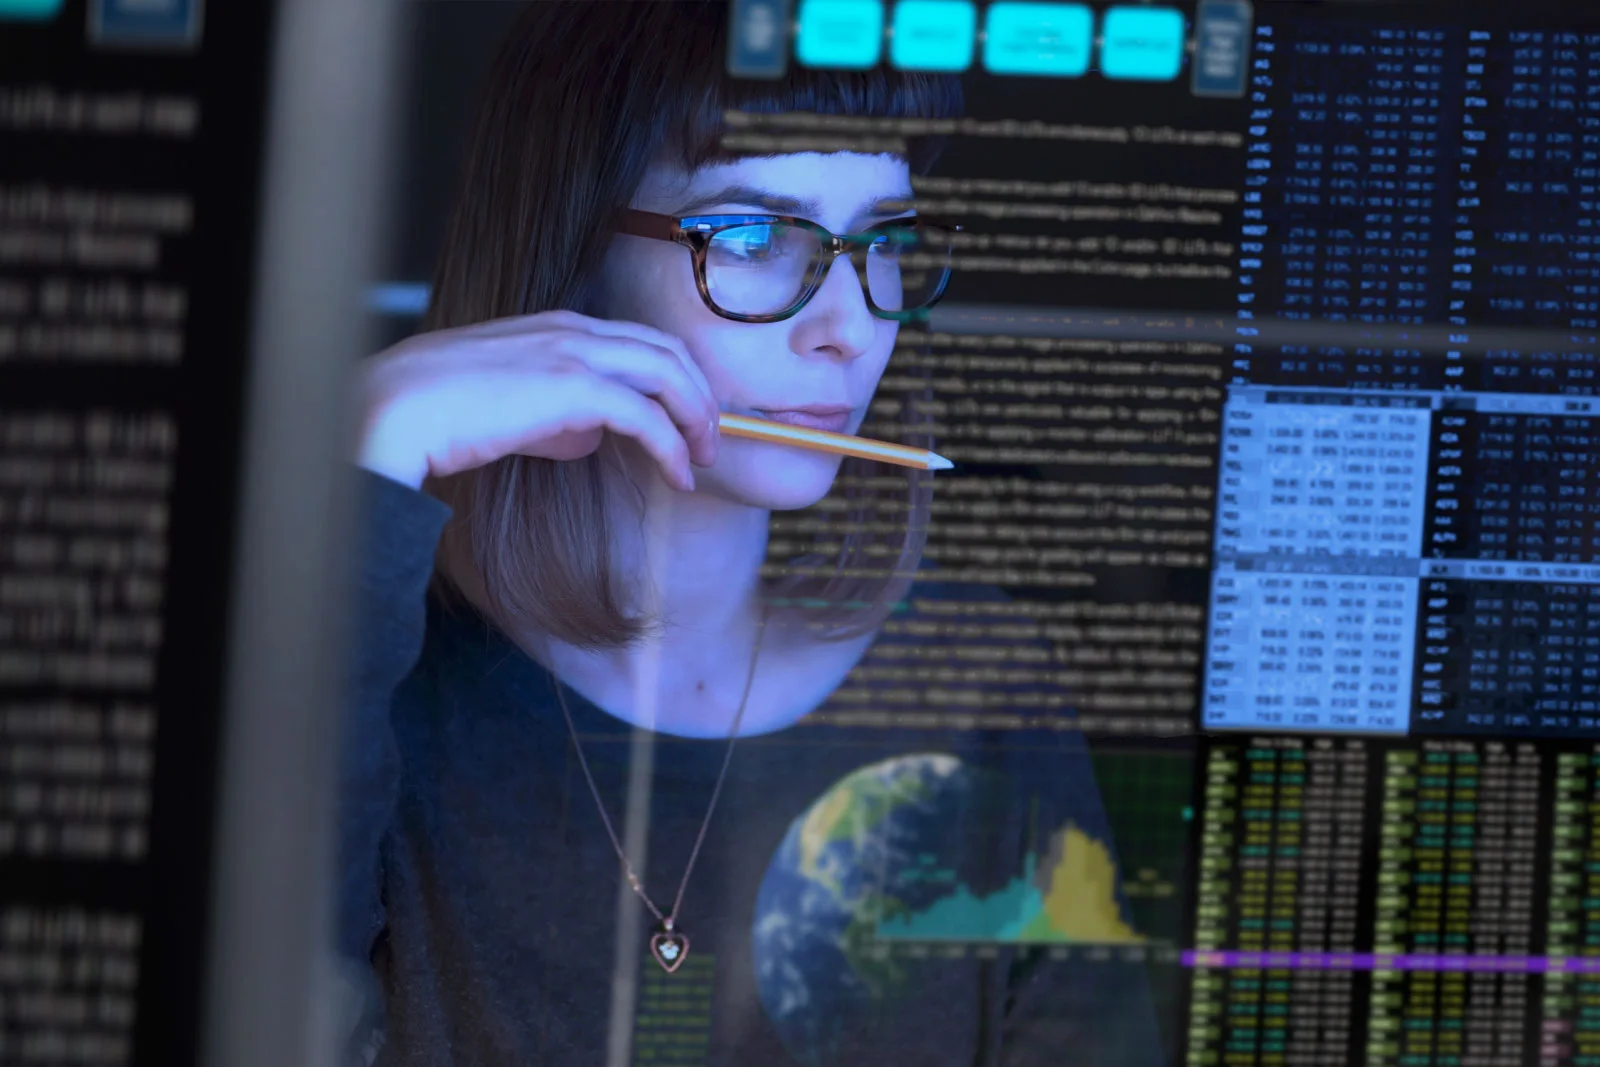 billede af en ung kvinde, der studerer en gennemsigtig computerskærm og overvejer.